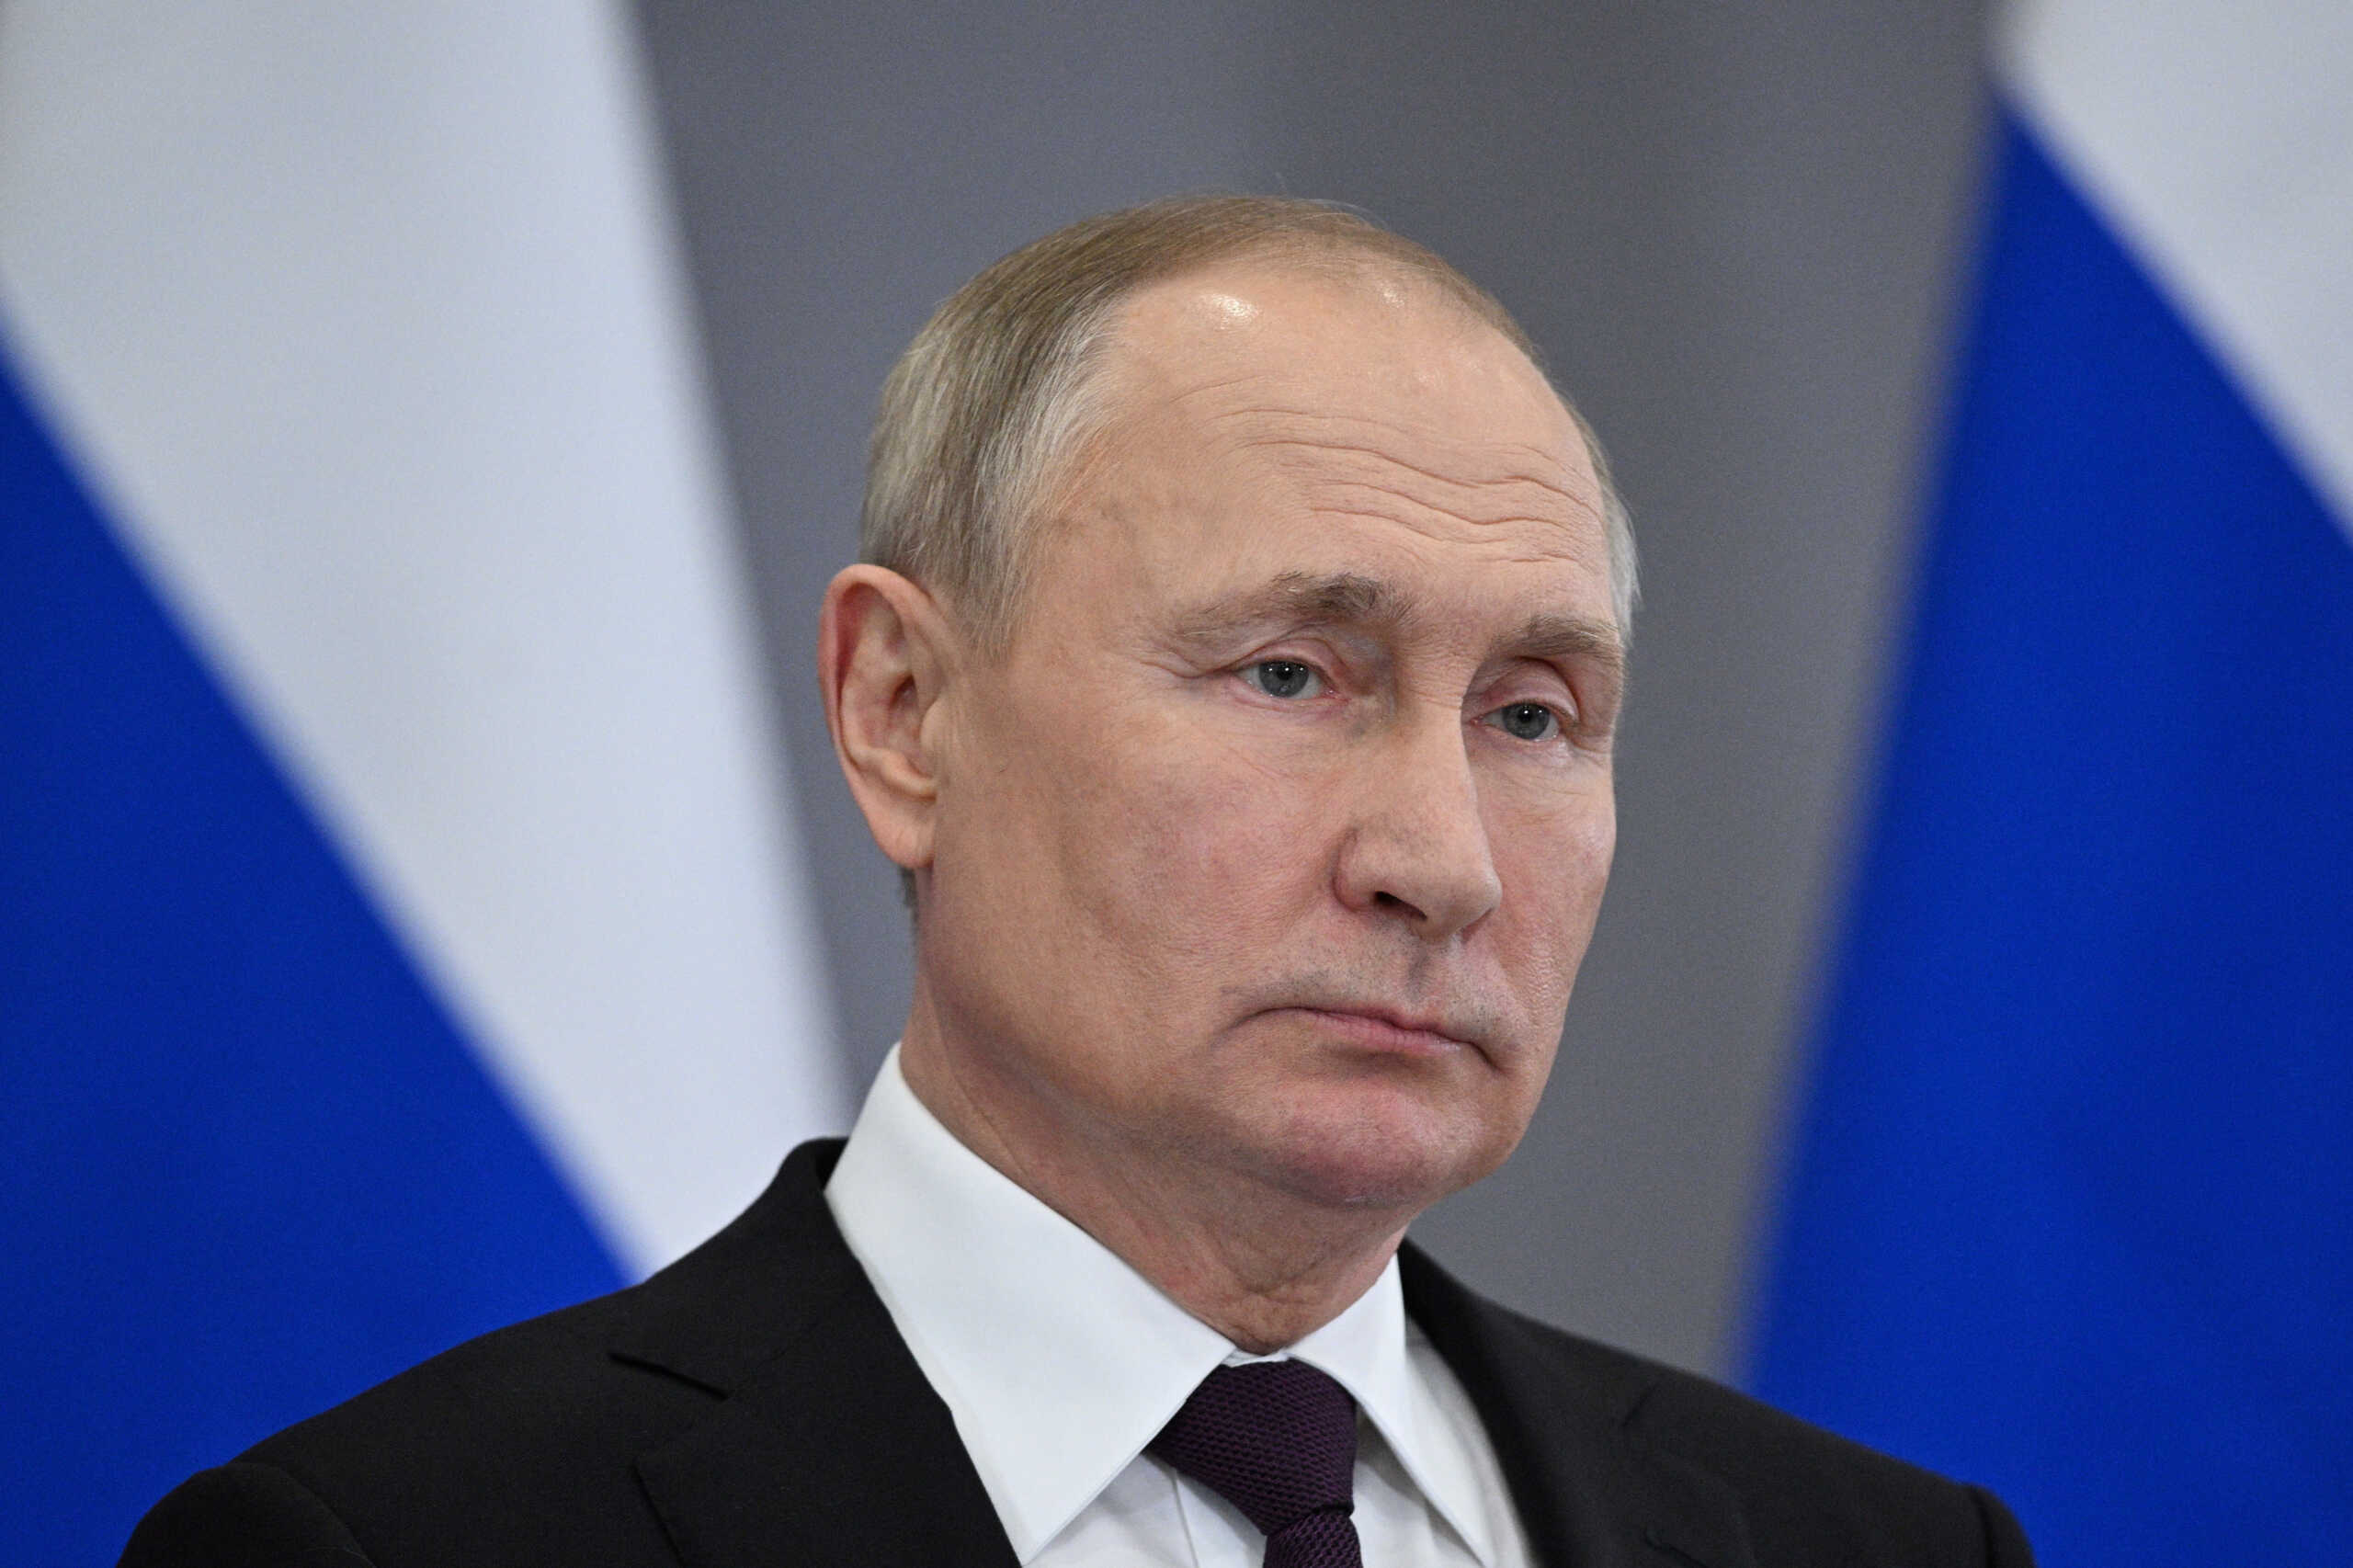 Βλαντιμίρ Πούτιν: Καμία ανάγκη για συνομιλίες με τον Τζο Μπάιντεν – Η Ρωσία κάνει το σωστό στην Ουκρανία